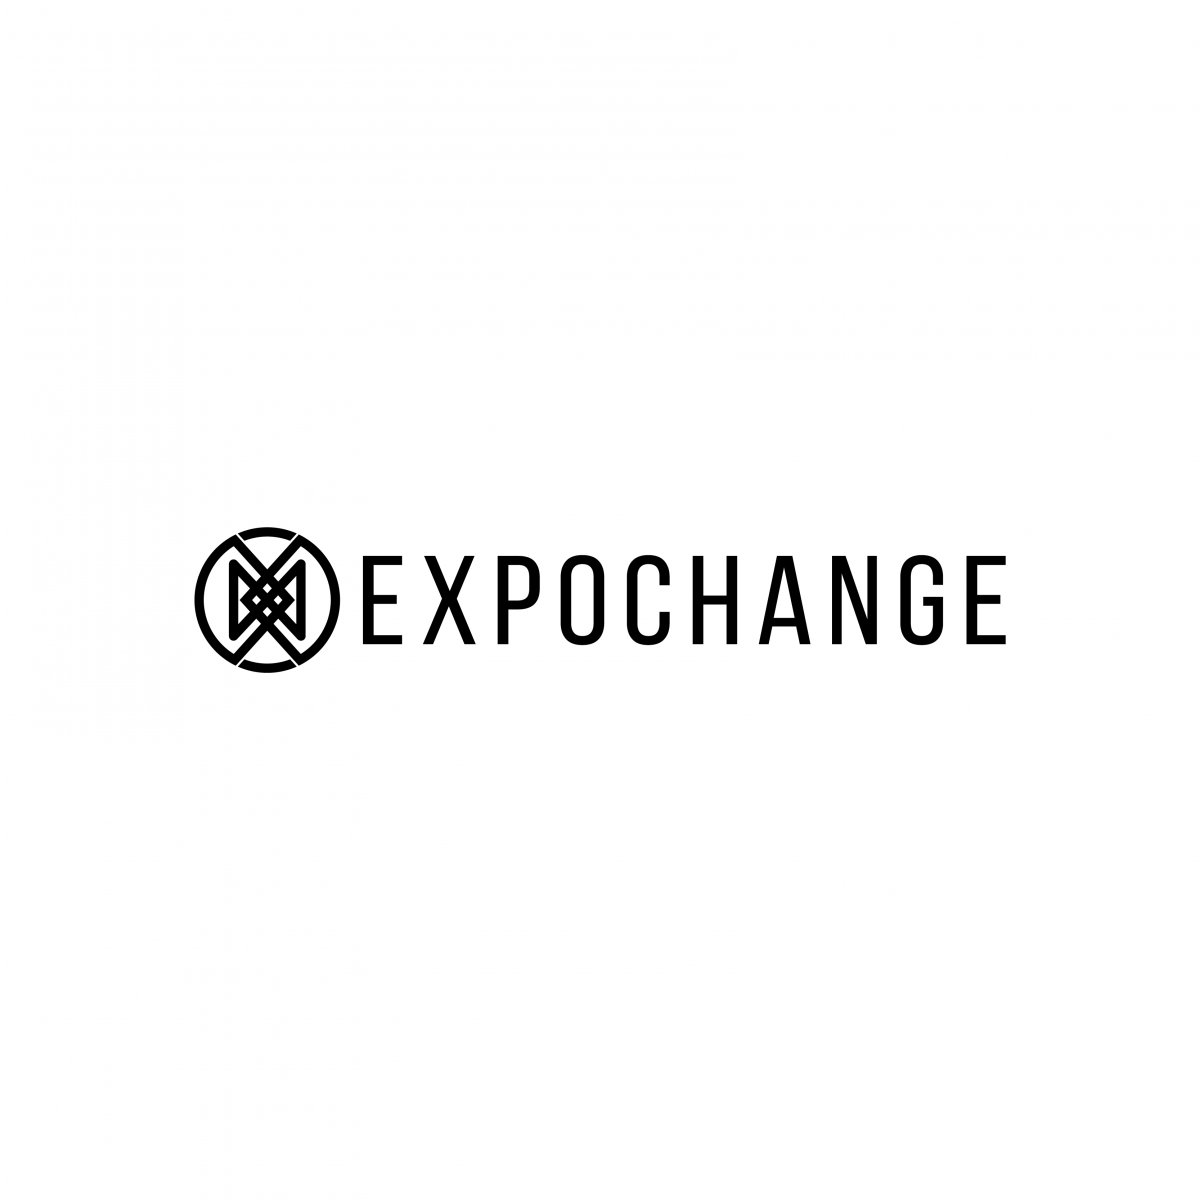 Expochange-01.jpg